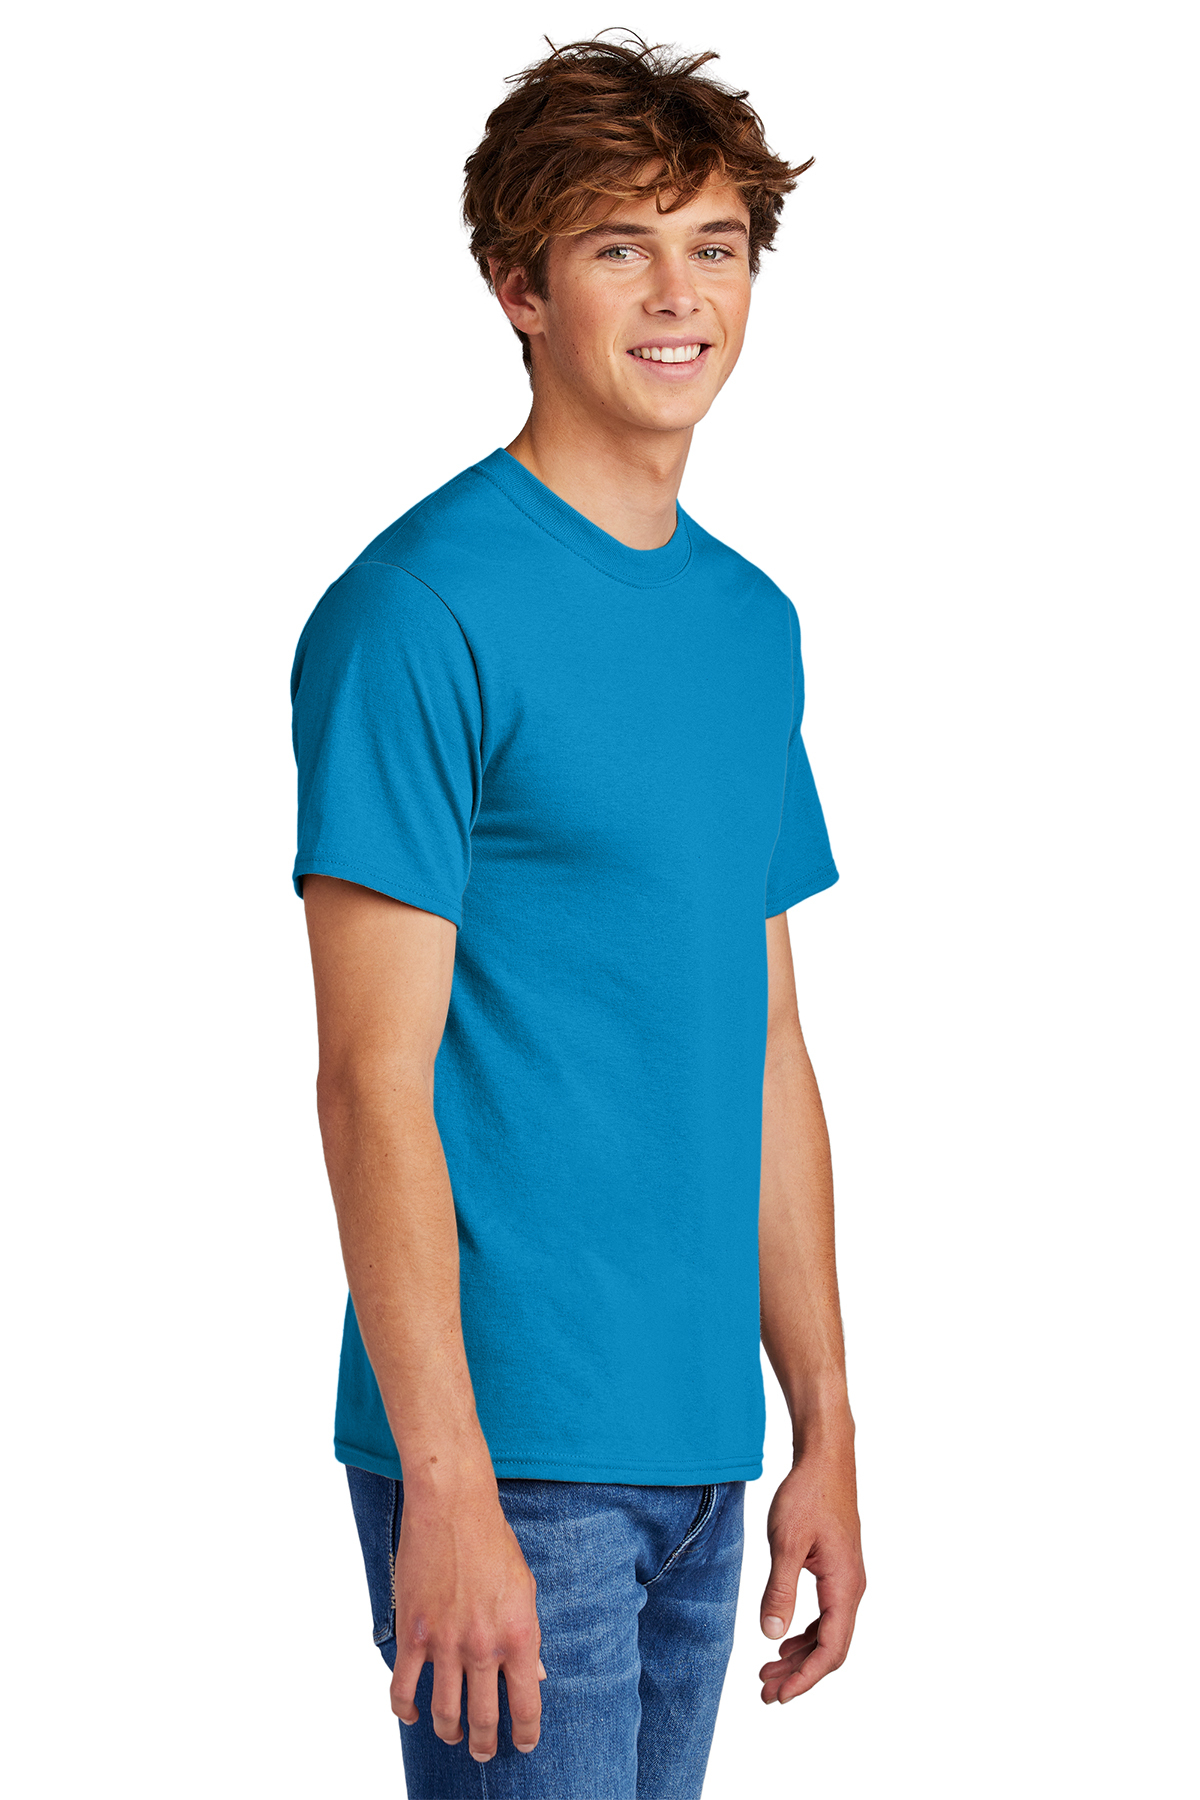 Wholesale Men's Core Cotton T-Shirt - Neon Green PC54, Case of 72